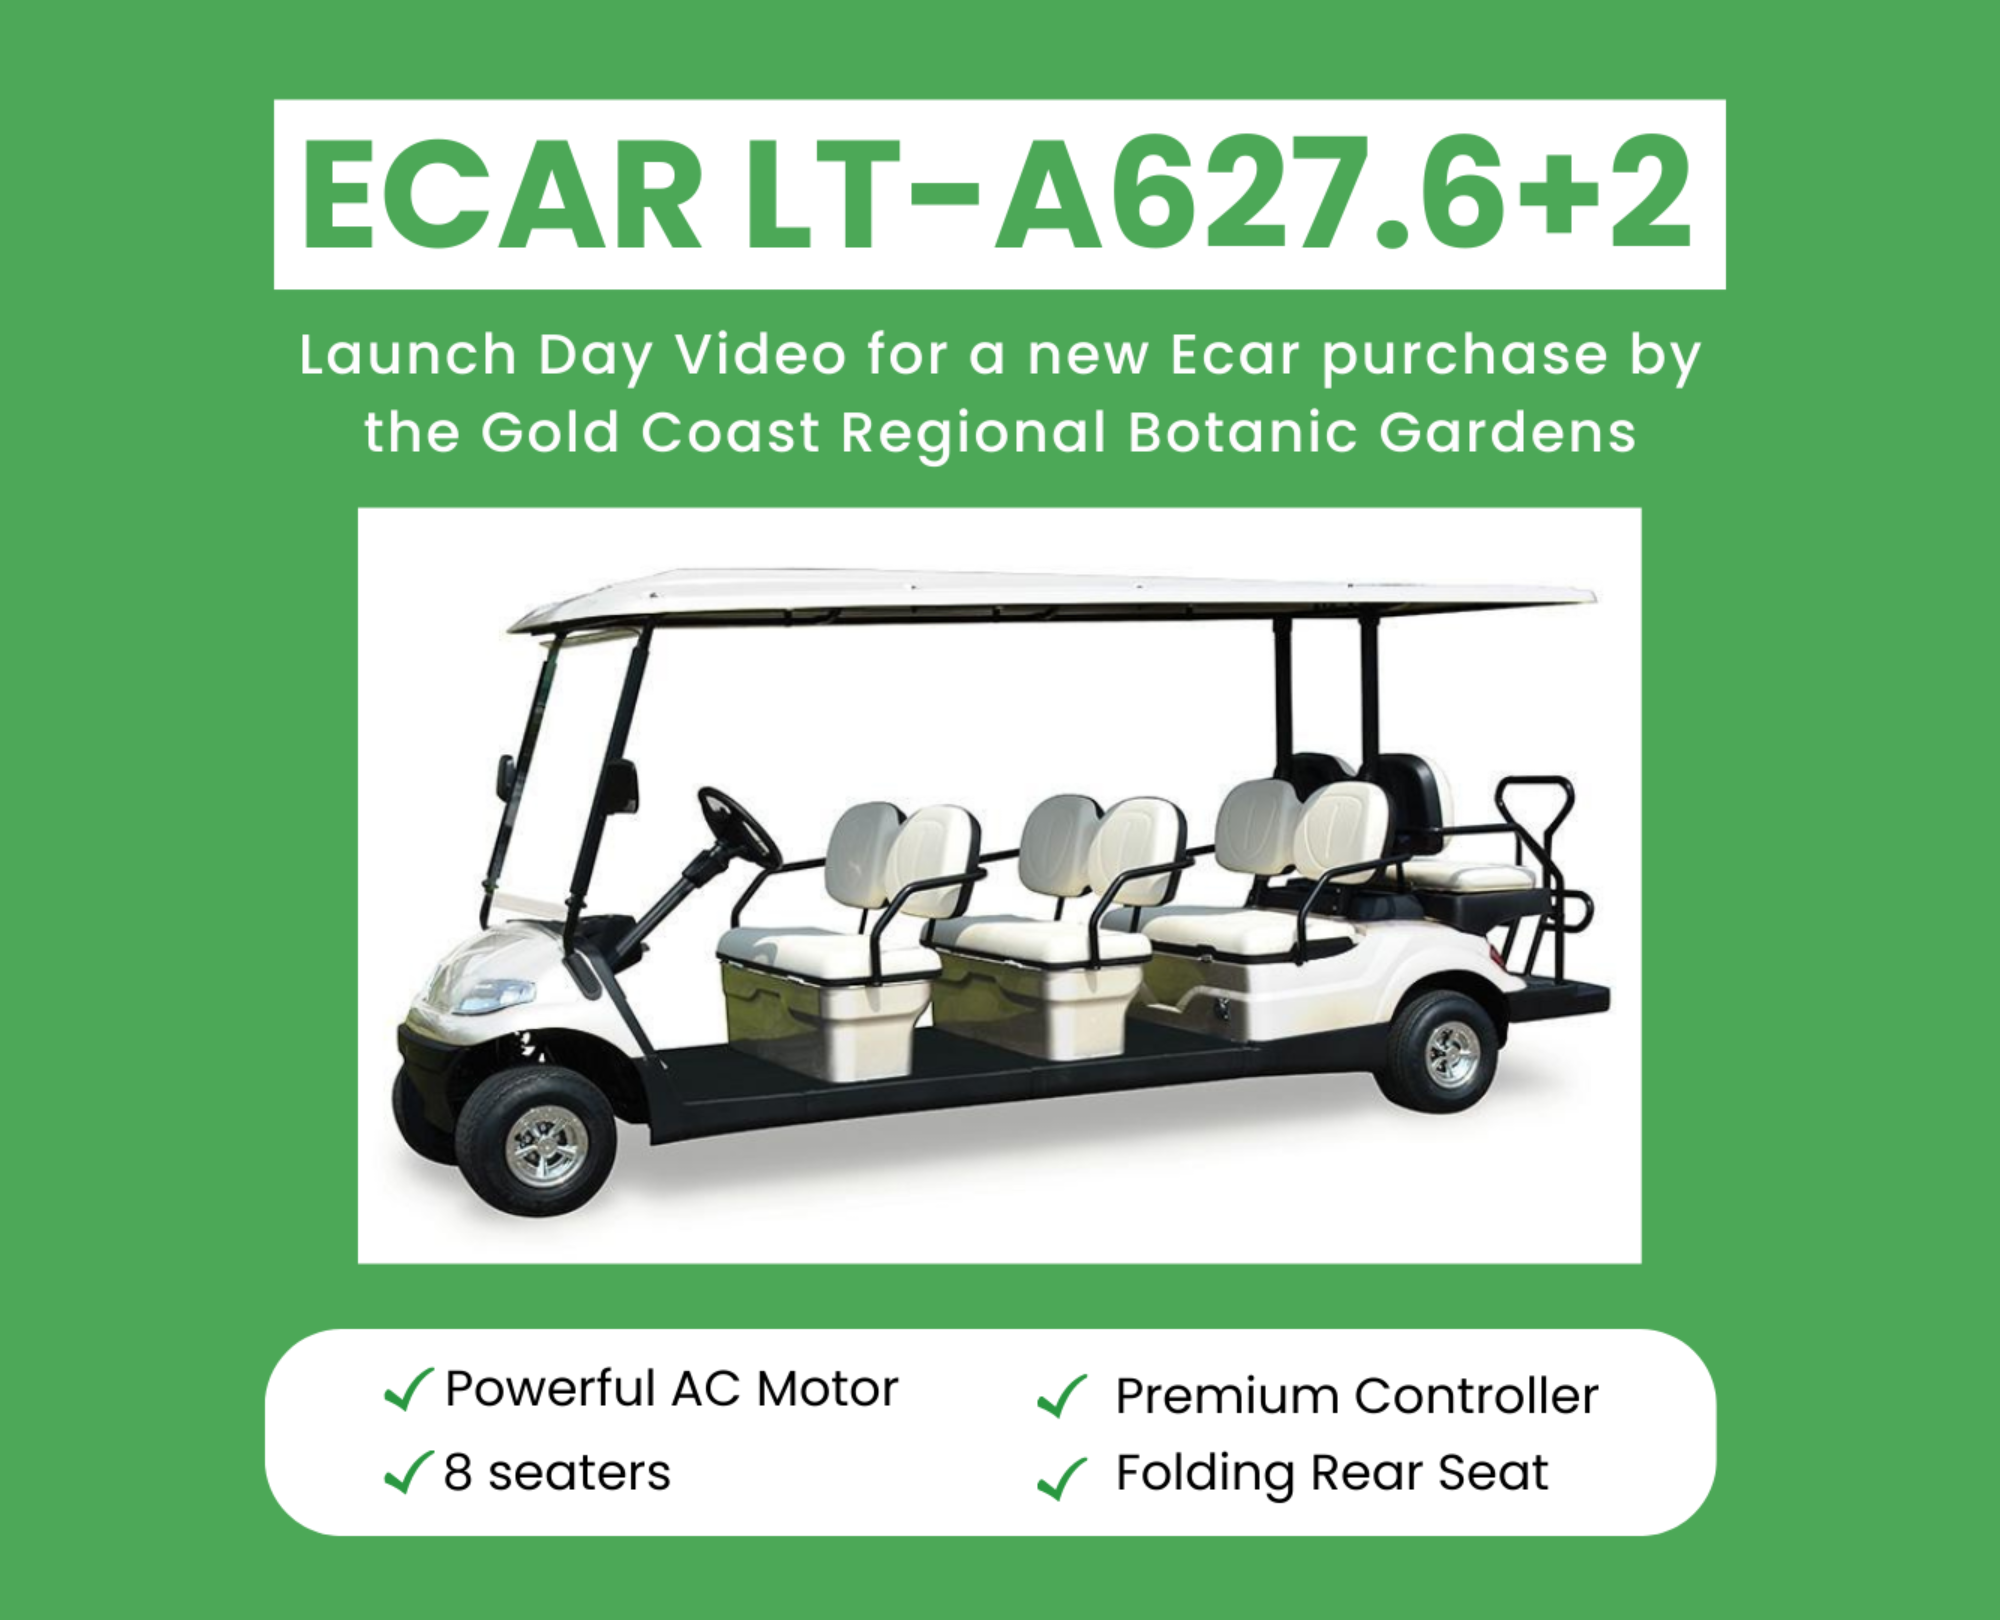 ECAR Golf – More than just a Golf Car!